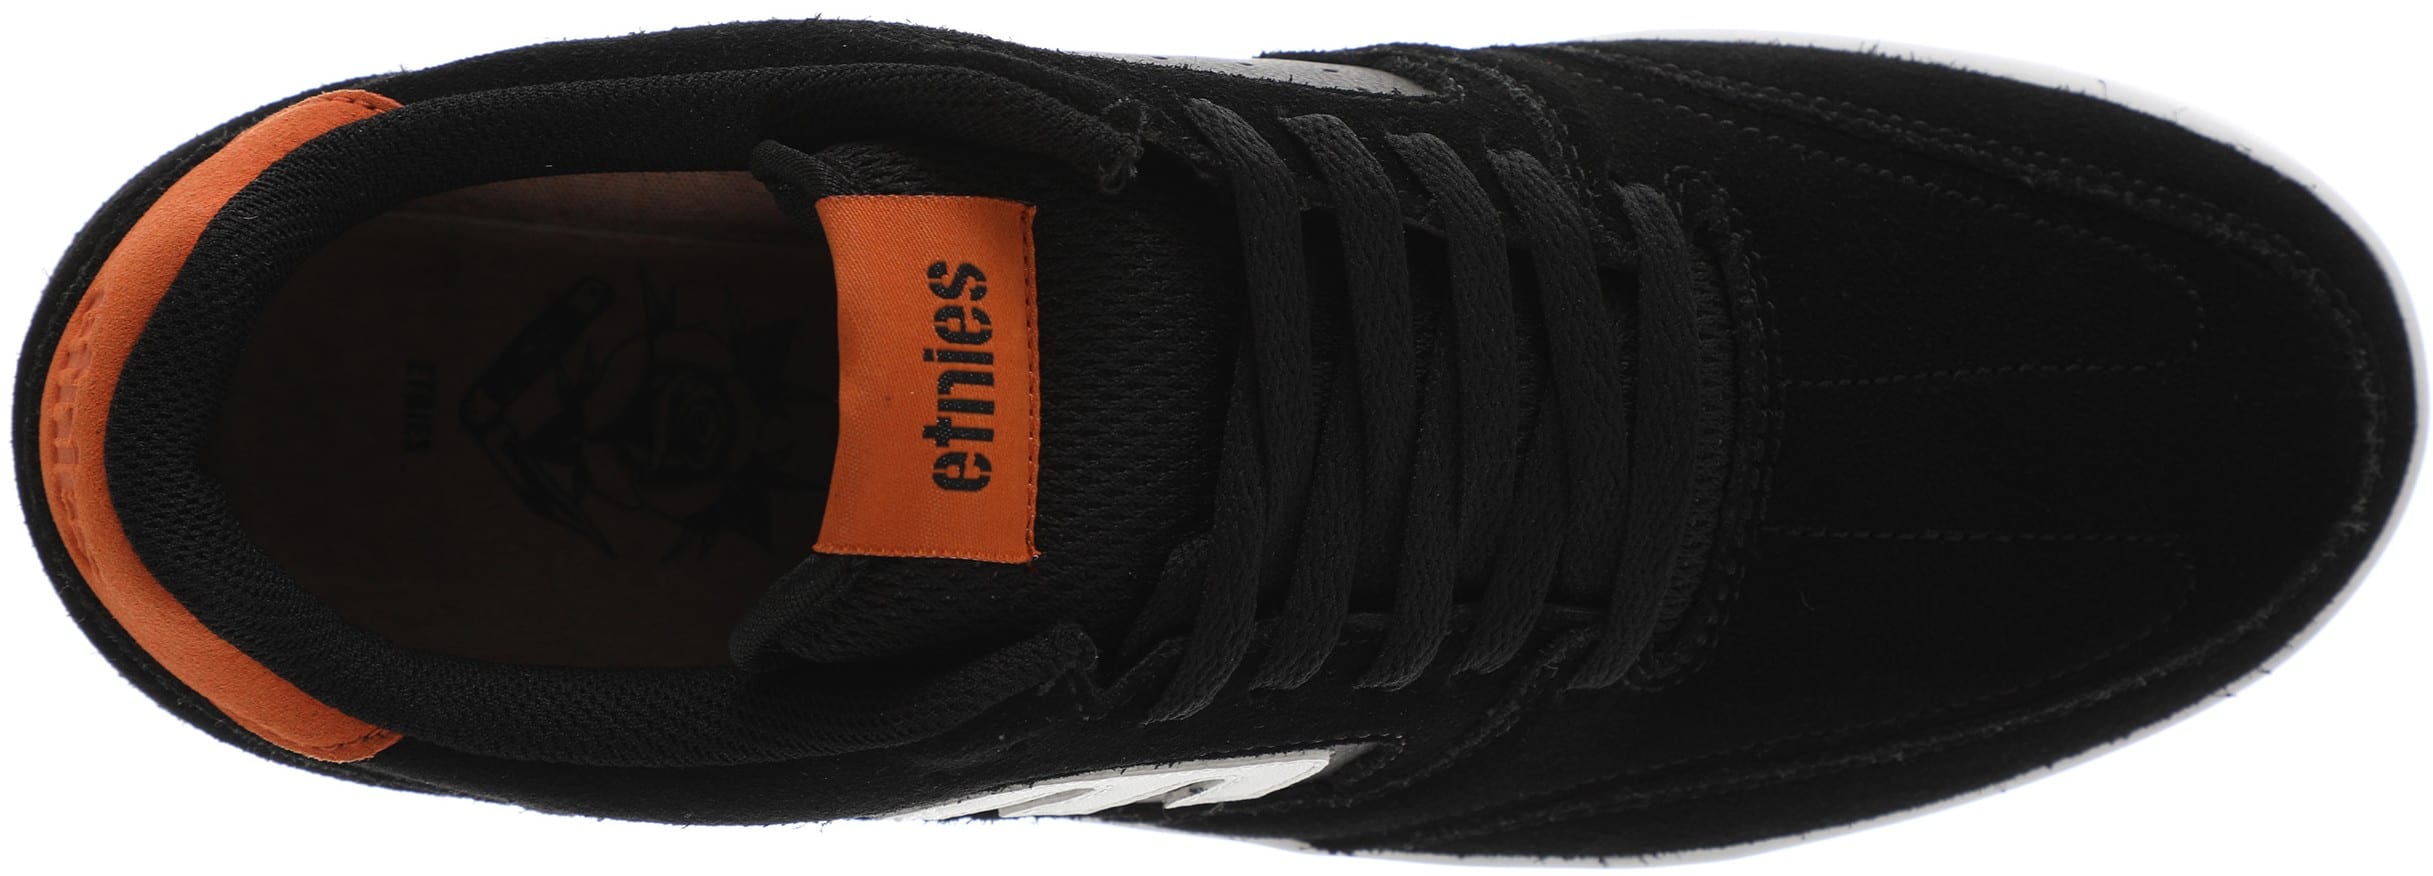 Etnies Veer Michelin Skate Shoes - (trevor mcclung) black/white/orange ...